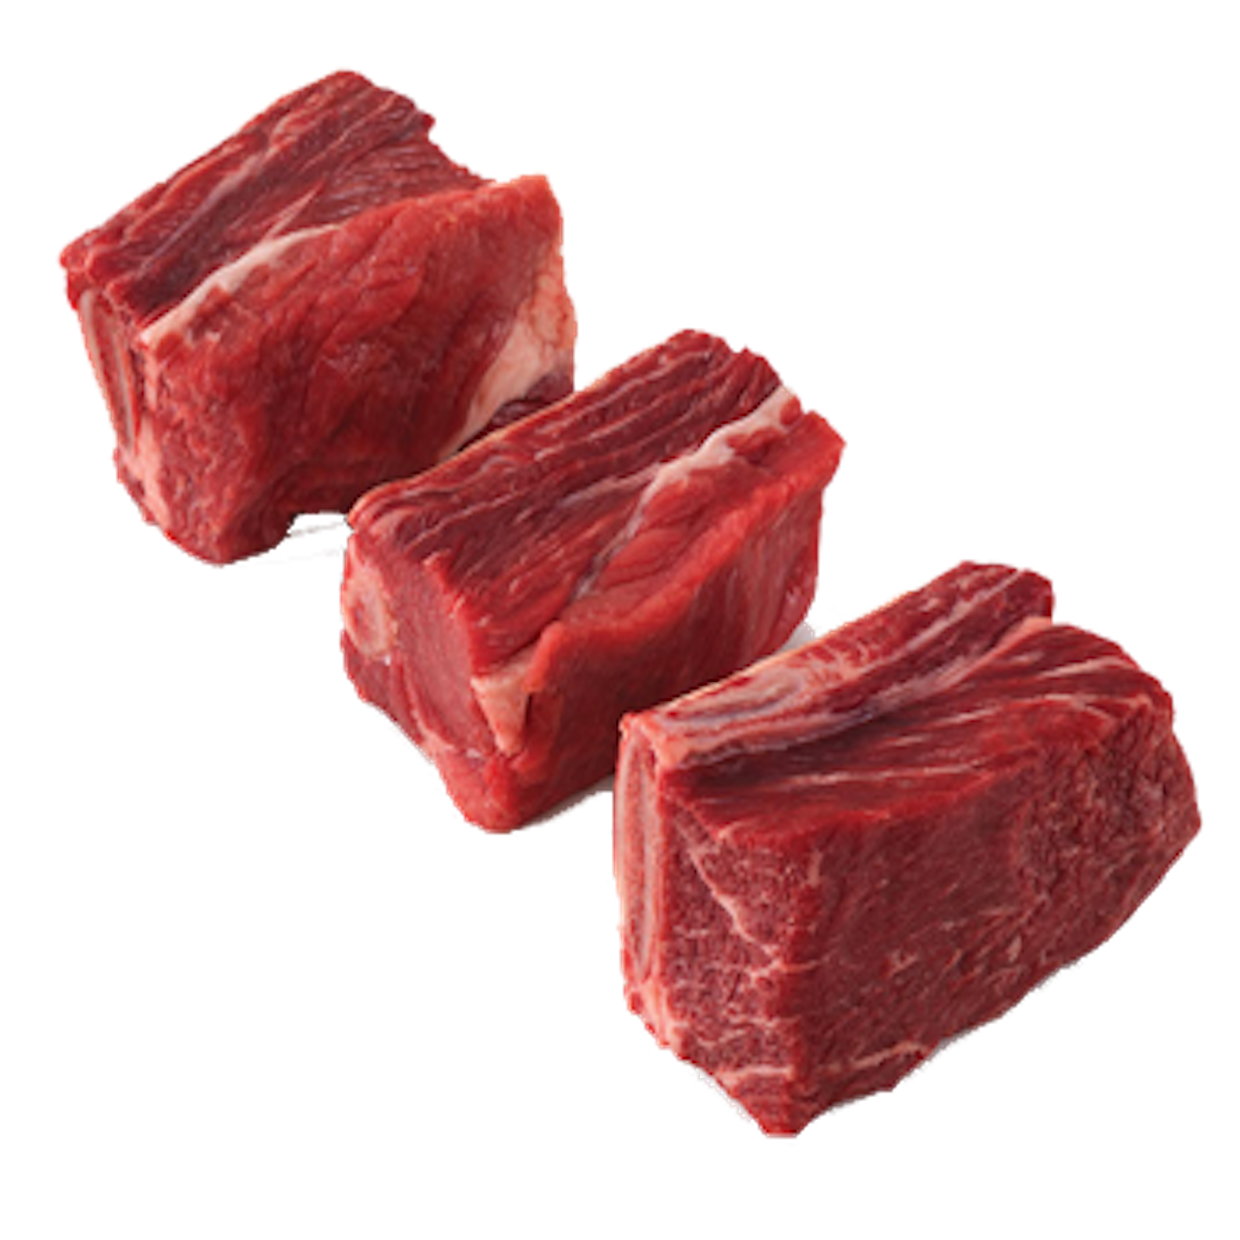 Beef Bone-In Short Ribs